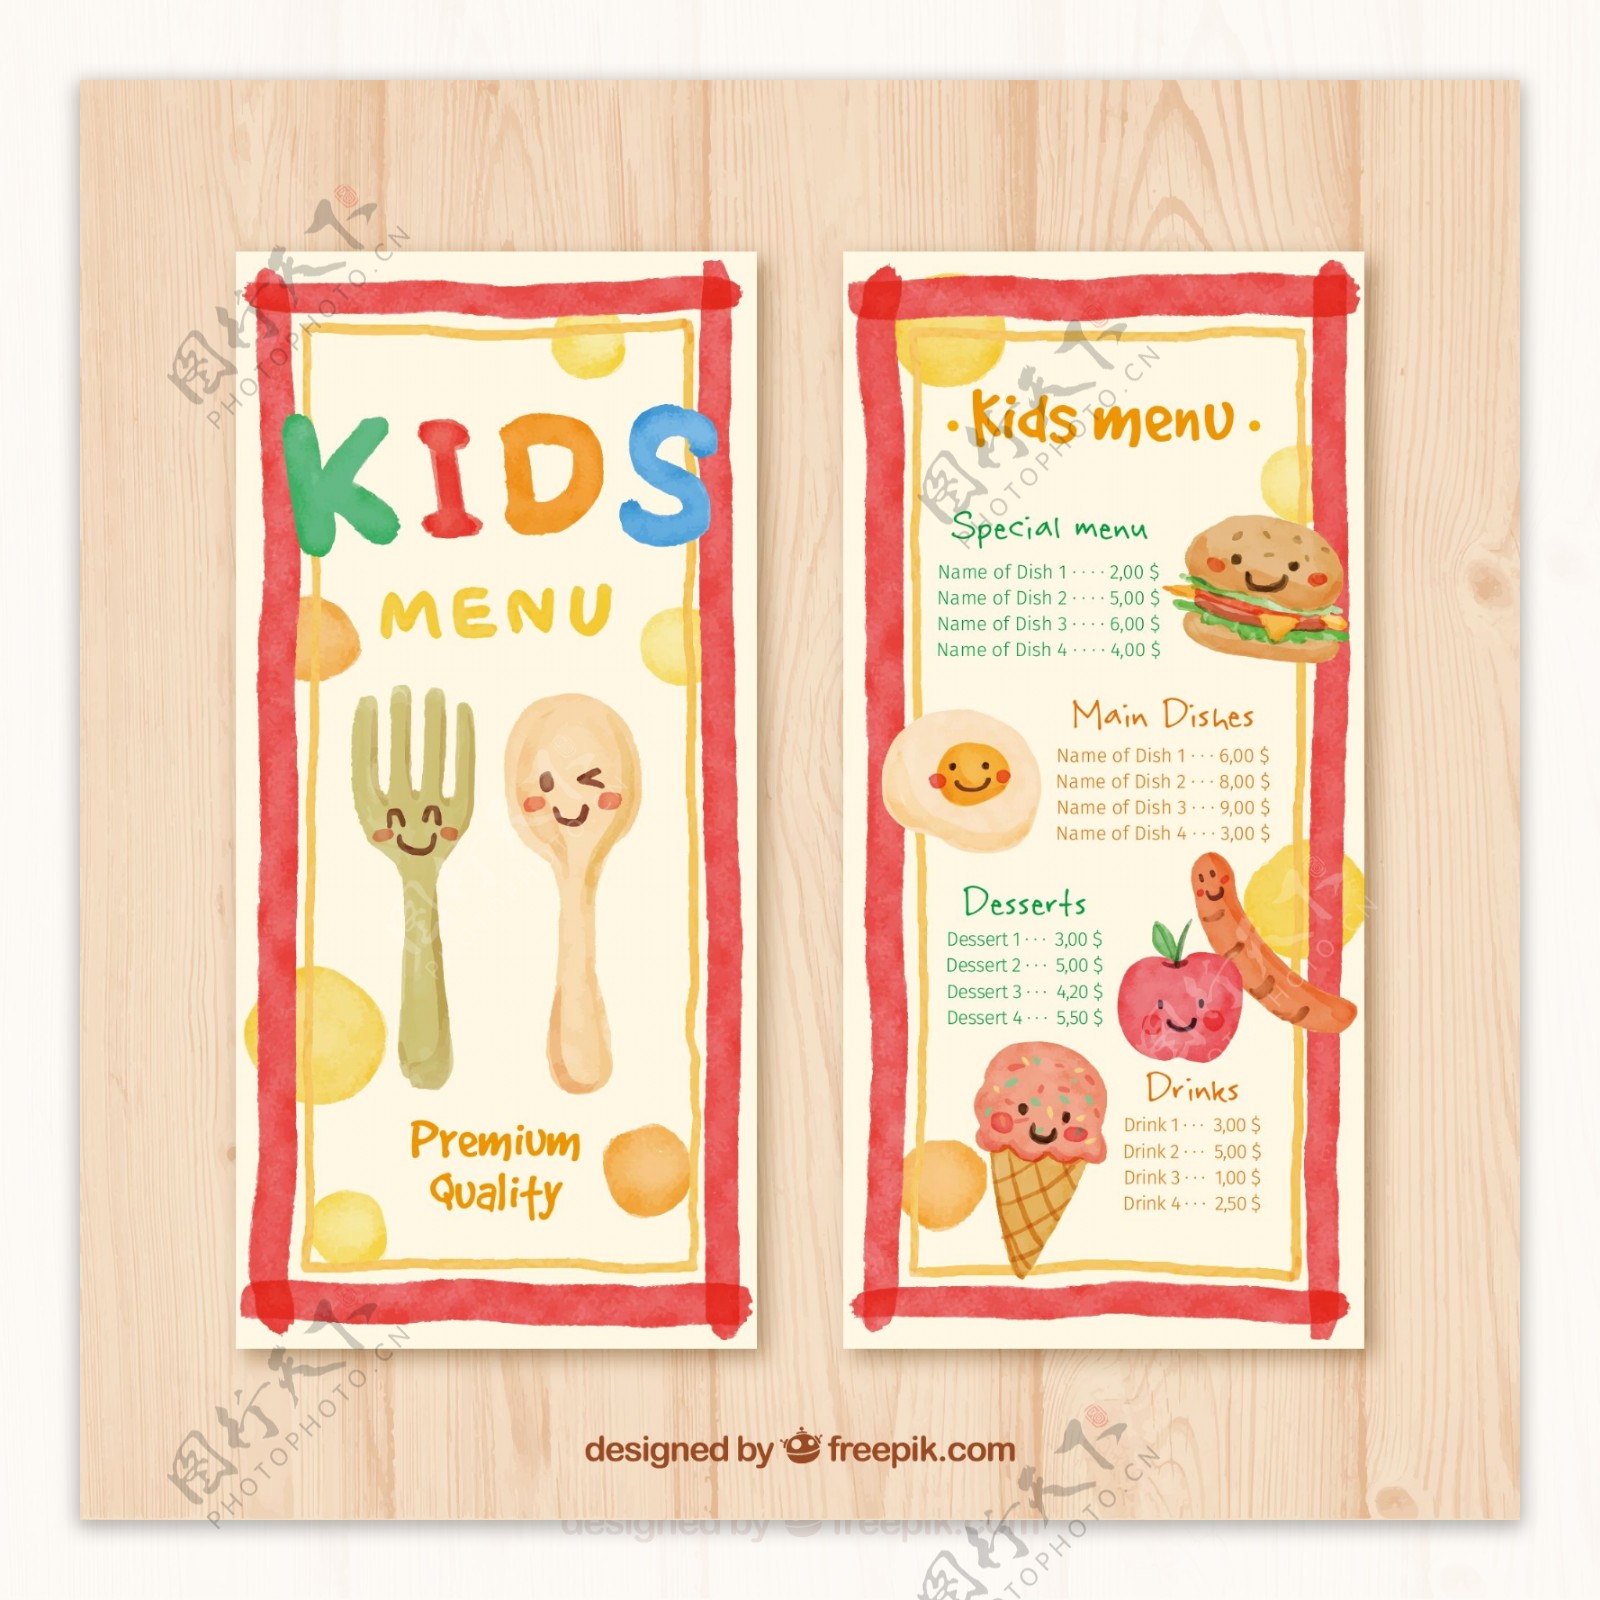 可爱餐具和食物儿童菜单设计